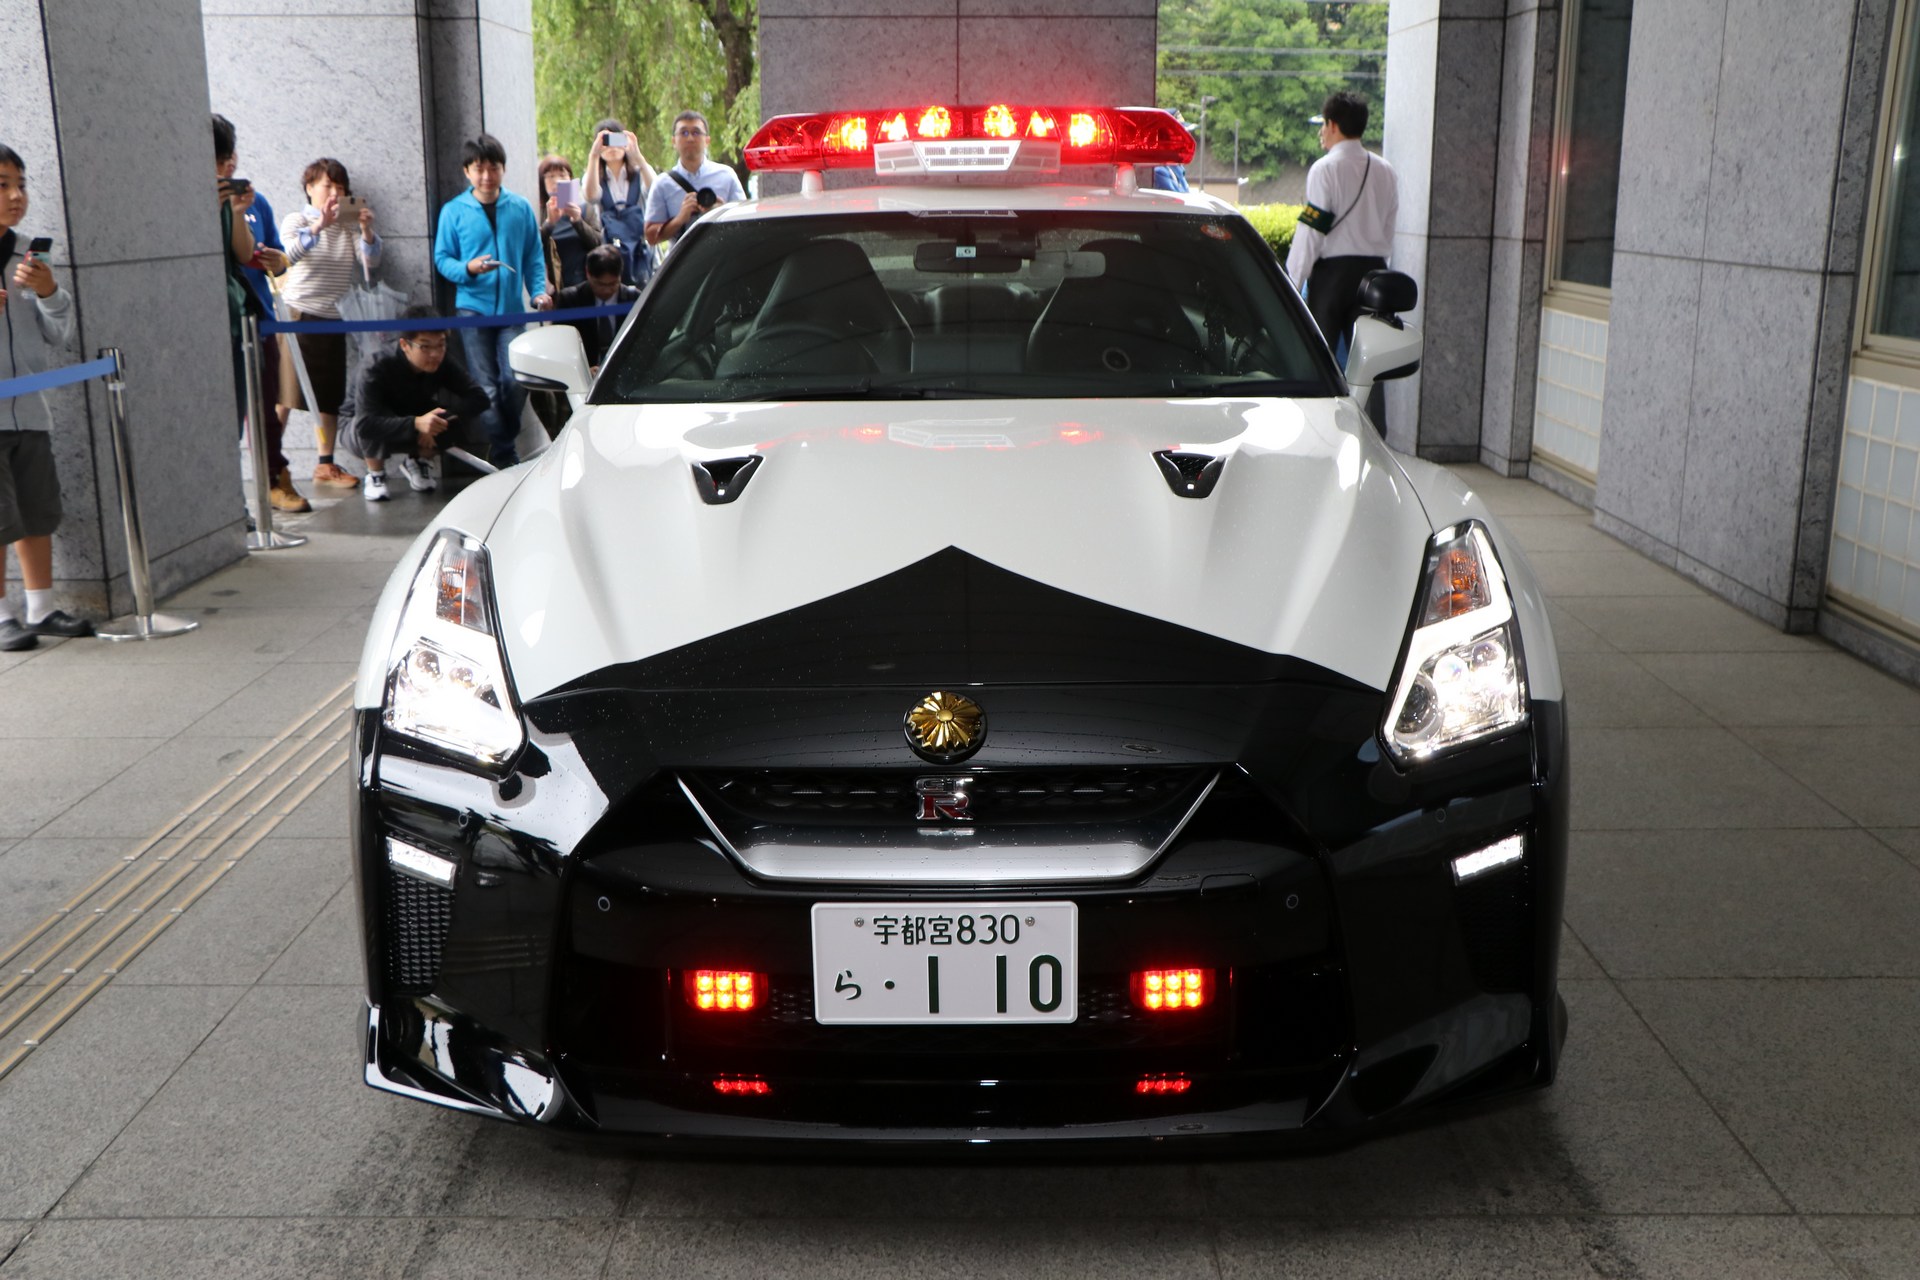 "بالصور" نيسان GT-R تدخل الخدمة رسميا بأسطول الشرطة اليابانية 43